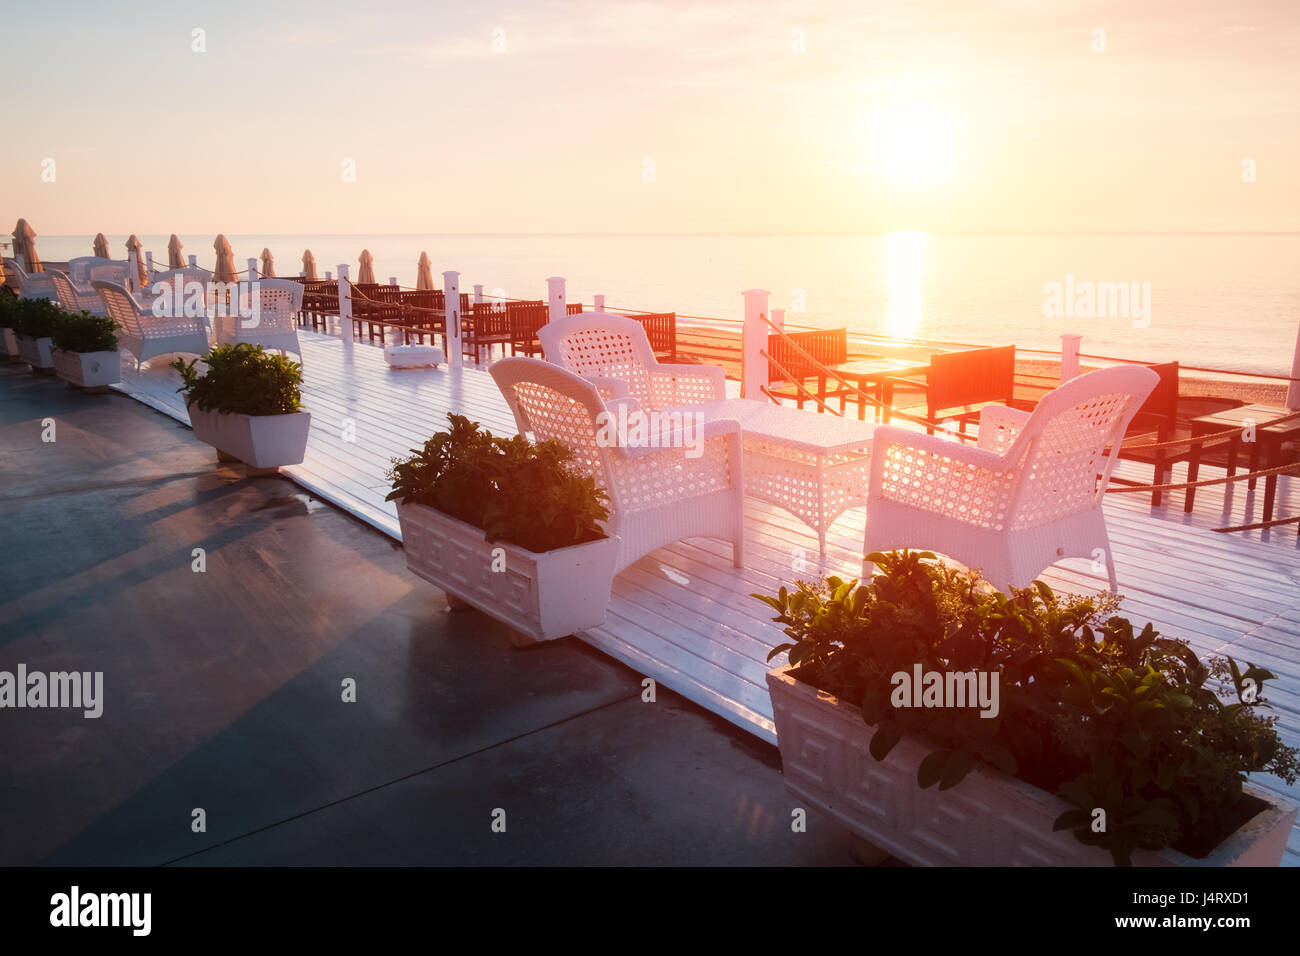 Restaurant d'été sur la plage. Vue imprenable sur la mer méditerranée. Terrasse en bois blanc et mobilier tressé Banque D'Images